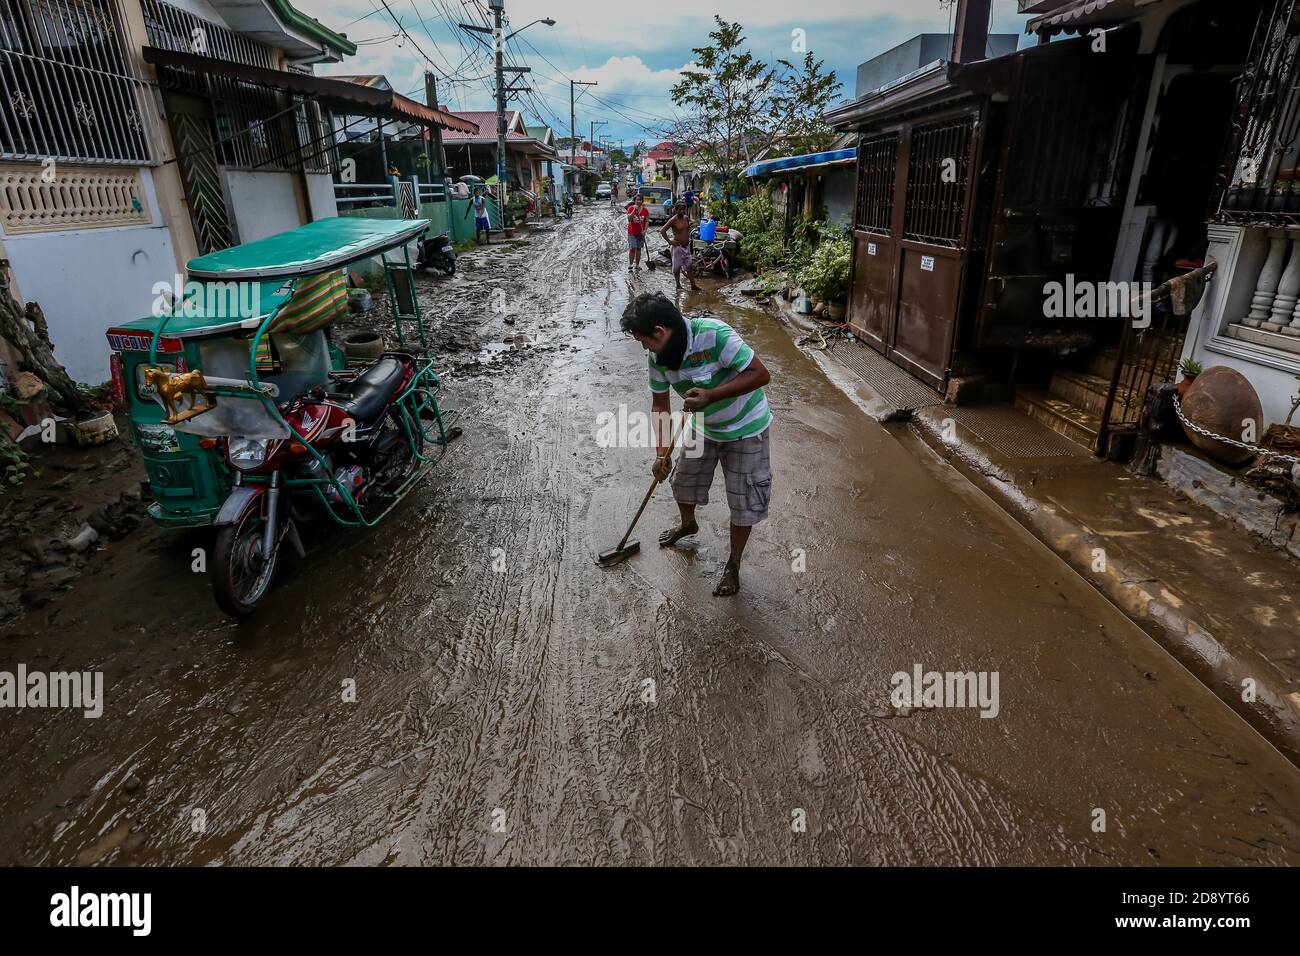 Province de Batangas, Philippines. 2 novembre 2020. Un homme nettoie une route couverte de boue et de débris après une inondation déclenchée par de fortes pluies du typhon Goni dans la province de Batangas, aux Philippines, le 2 novembre 2020. Le nombre de décès dus au typhon Goni, qui a balayé le sud de l'île principale des Philippines, Luzon, est passé à 16, a déclaré lundi l'organisme de gestion des catastrophes du pays. Crédit: Rouelle Umali/Xinhua/Alamy Live News Banque D'Images